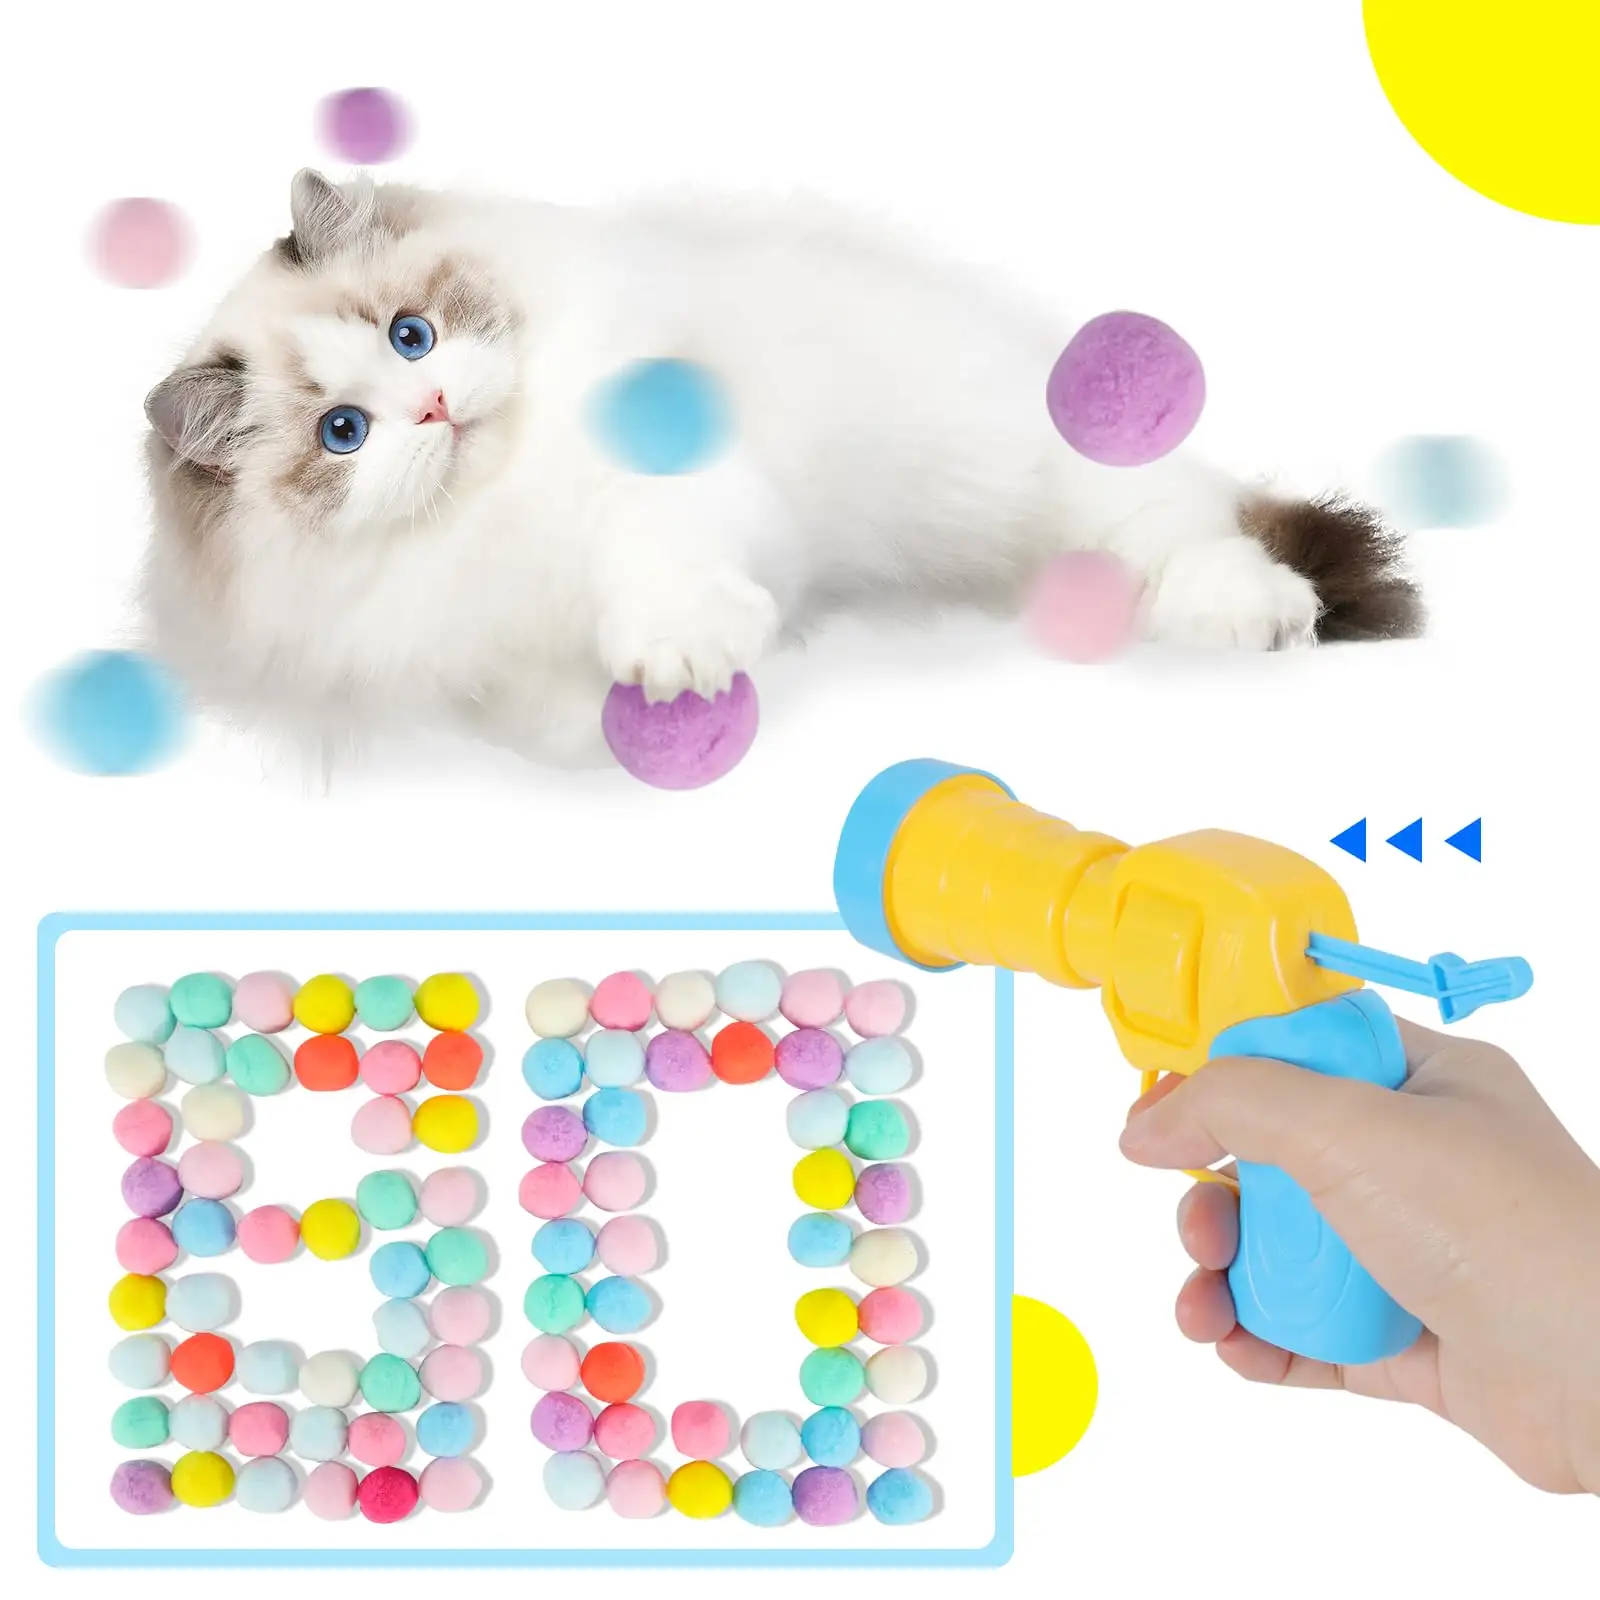 सक्रिय रंगीन इंटरैक्टिव बिल्ली प्लास्टिक टेबल टेनिस बंदूक व्यायाम खिलौने गेंदों लांचर खिलौने नरम बिल्ली पोम पोम गेंदों के साथ सेट के लिए